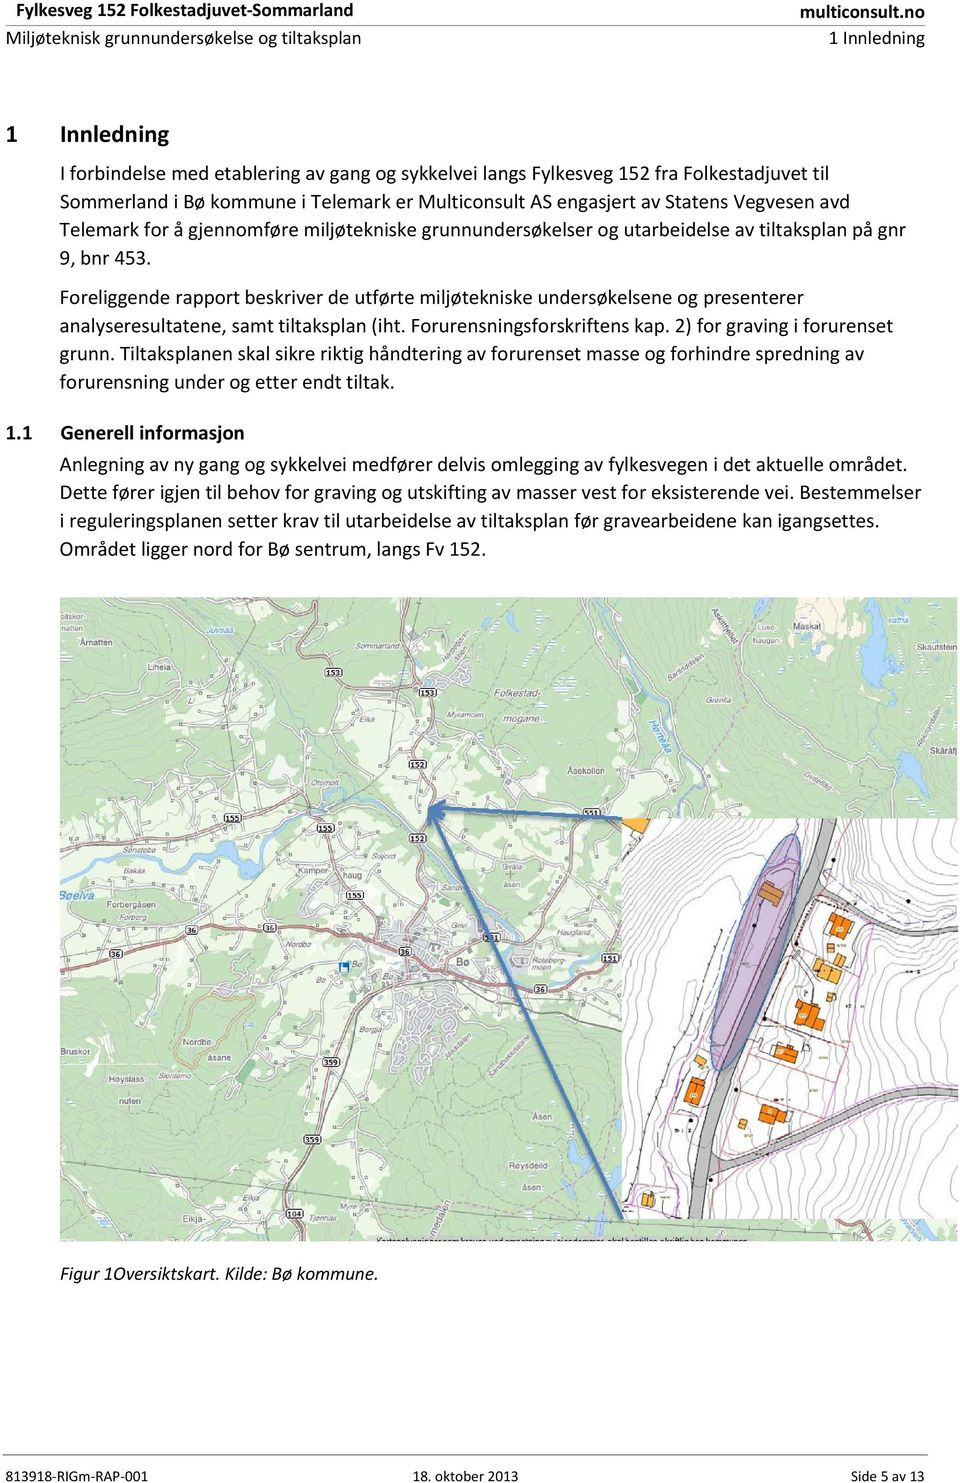 Vegvesen avd Telemark for å gjennomføre miljøtekniske grunnundersøkelser og utarbeidelse av tiltaksplan på gnr 9, bnr 453.